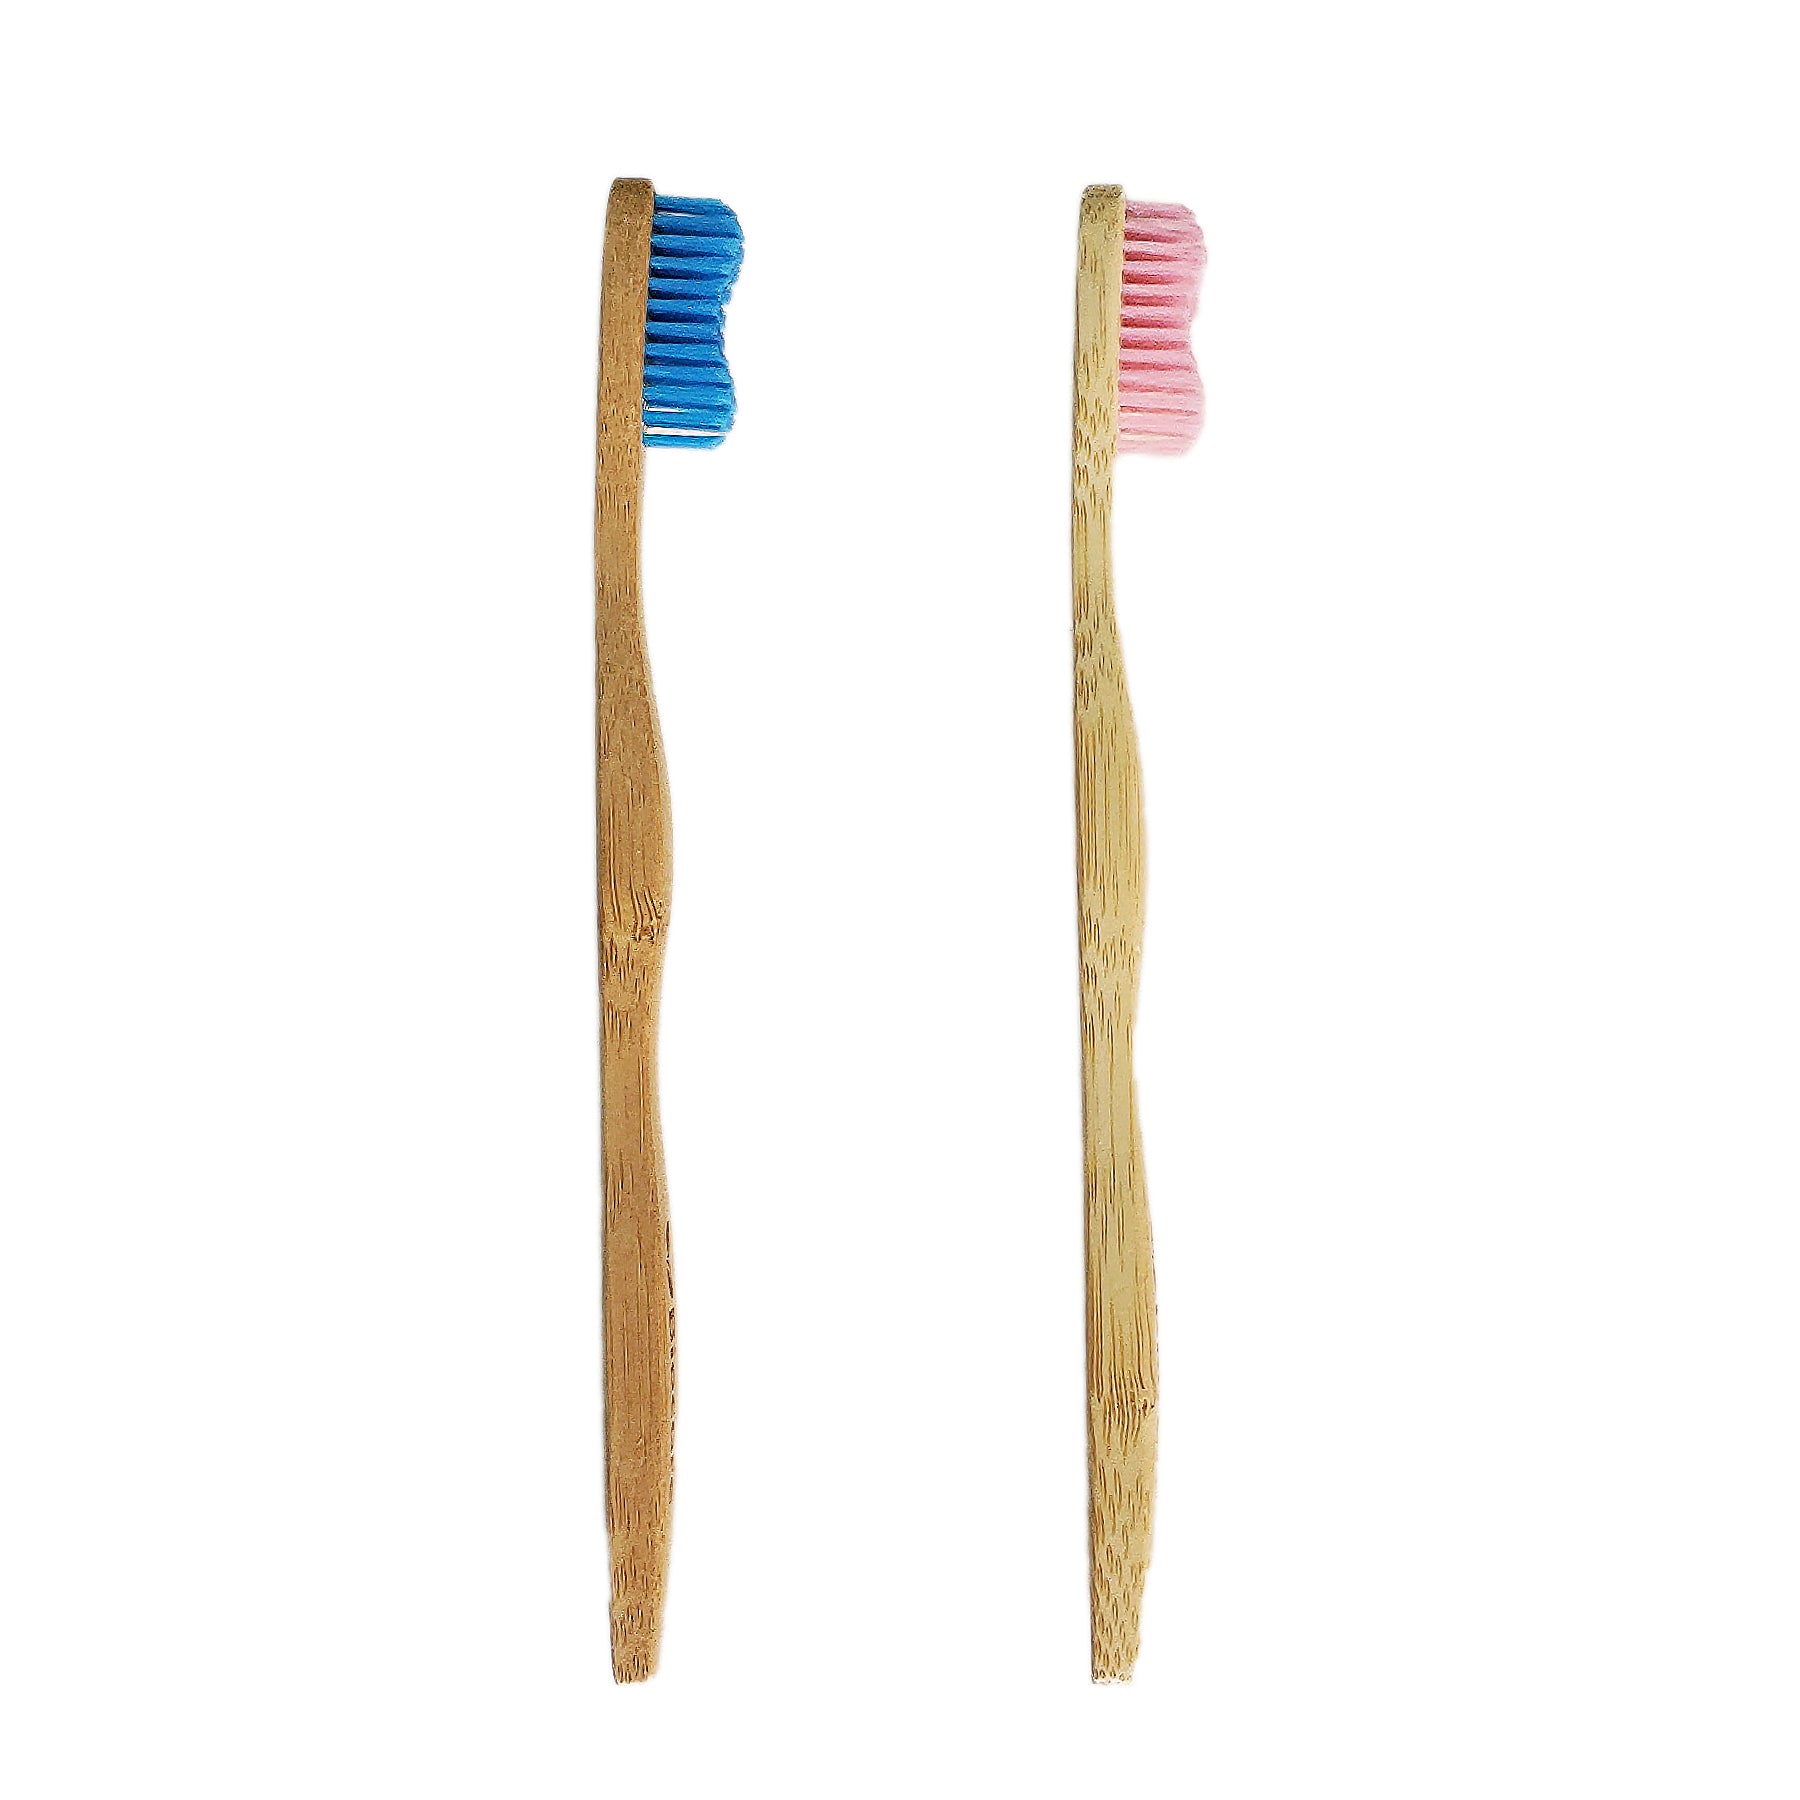 Cepillos de dientes de bambú Biocare (adult@s y niñ@s) Salud + Cuidado Personal - La Tortuga y La Liebre Tienda zero waste cero basura Bogota Colombia